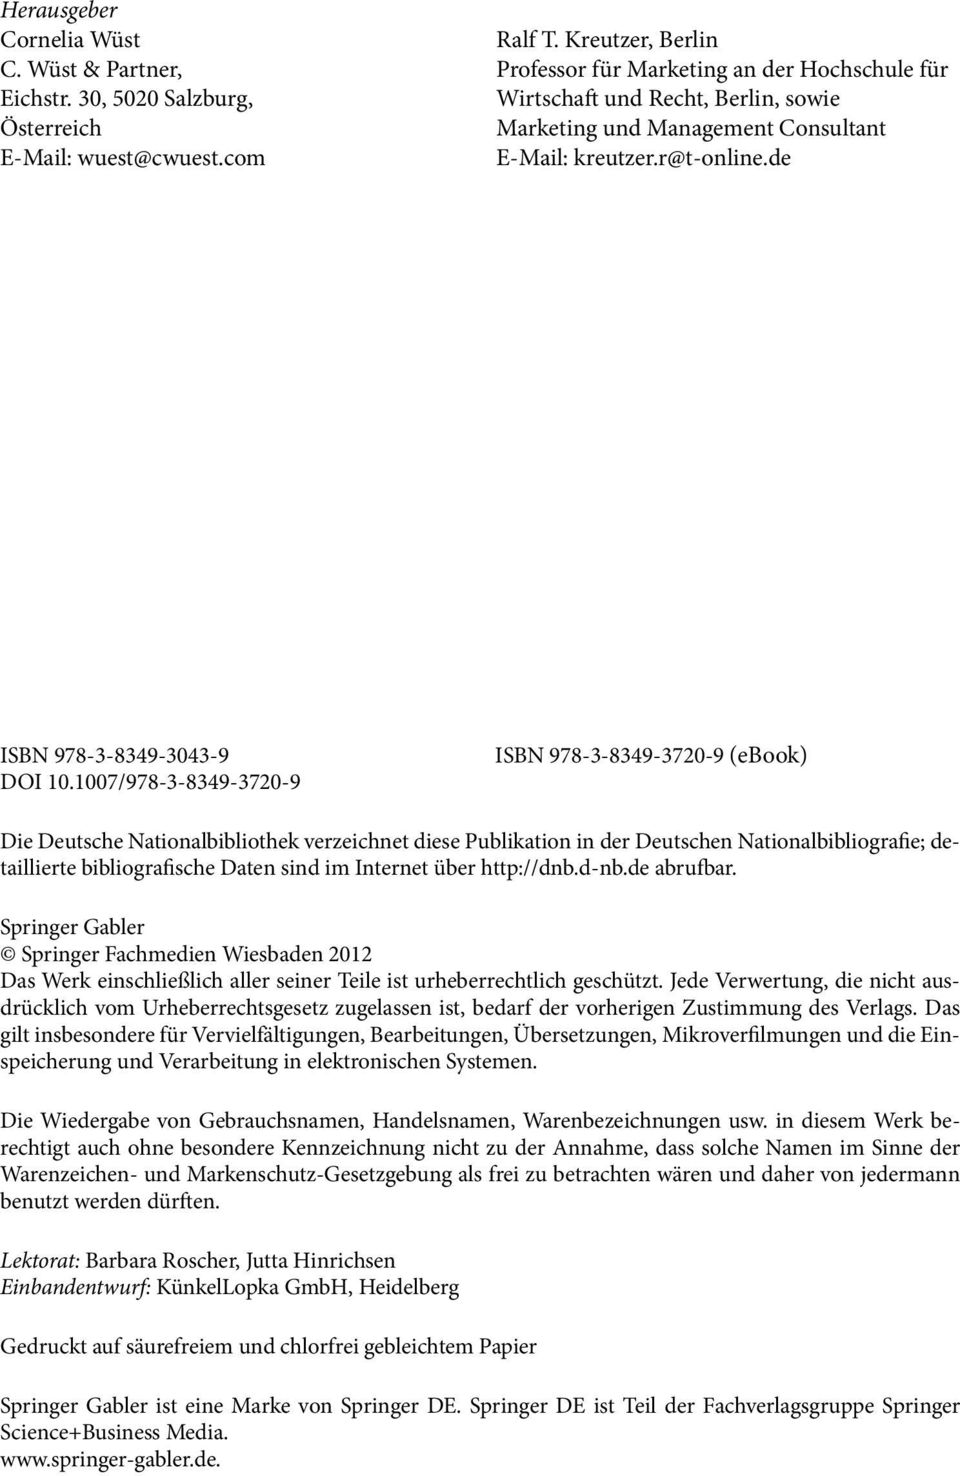 1007/978-3-8349-3720-9 ISBN 978-3-8349-3720-9 (ebook) Die Deutsche Nationalbibliothek verzeichnet diese Publikation in der Deutschen Nationalbibliografie; detaillierte bibliografische Daten sind im